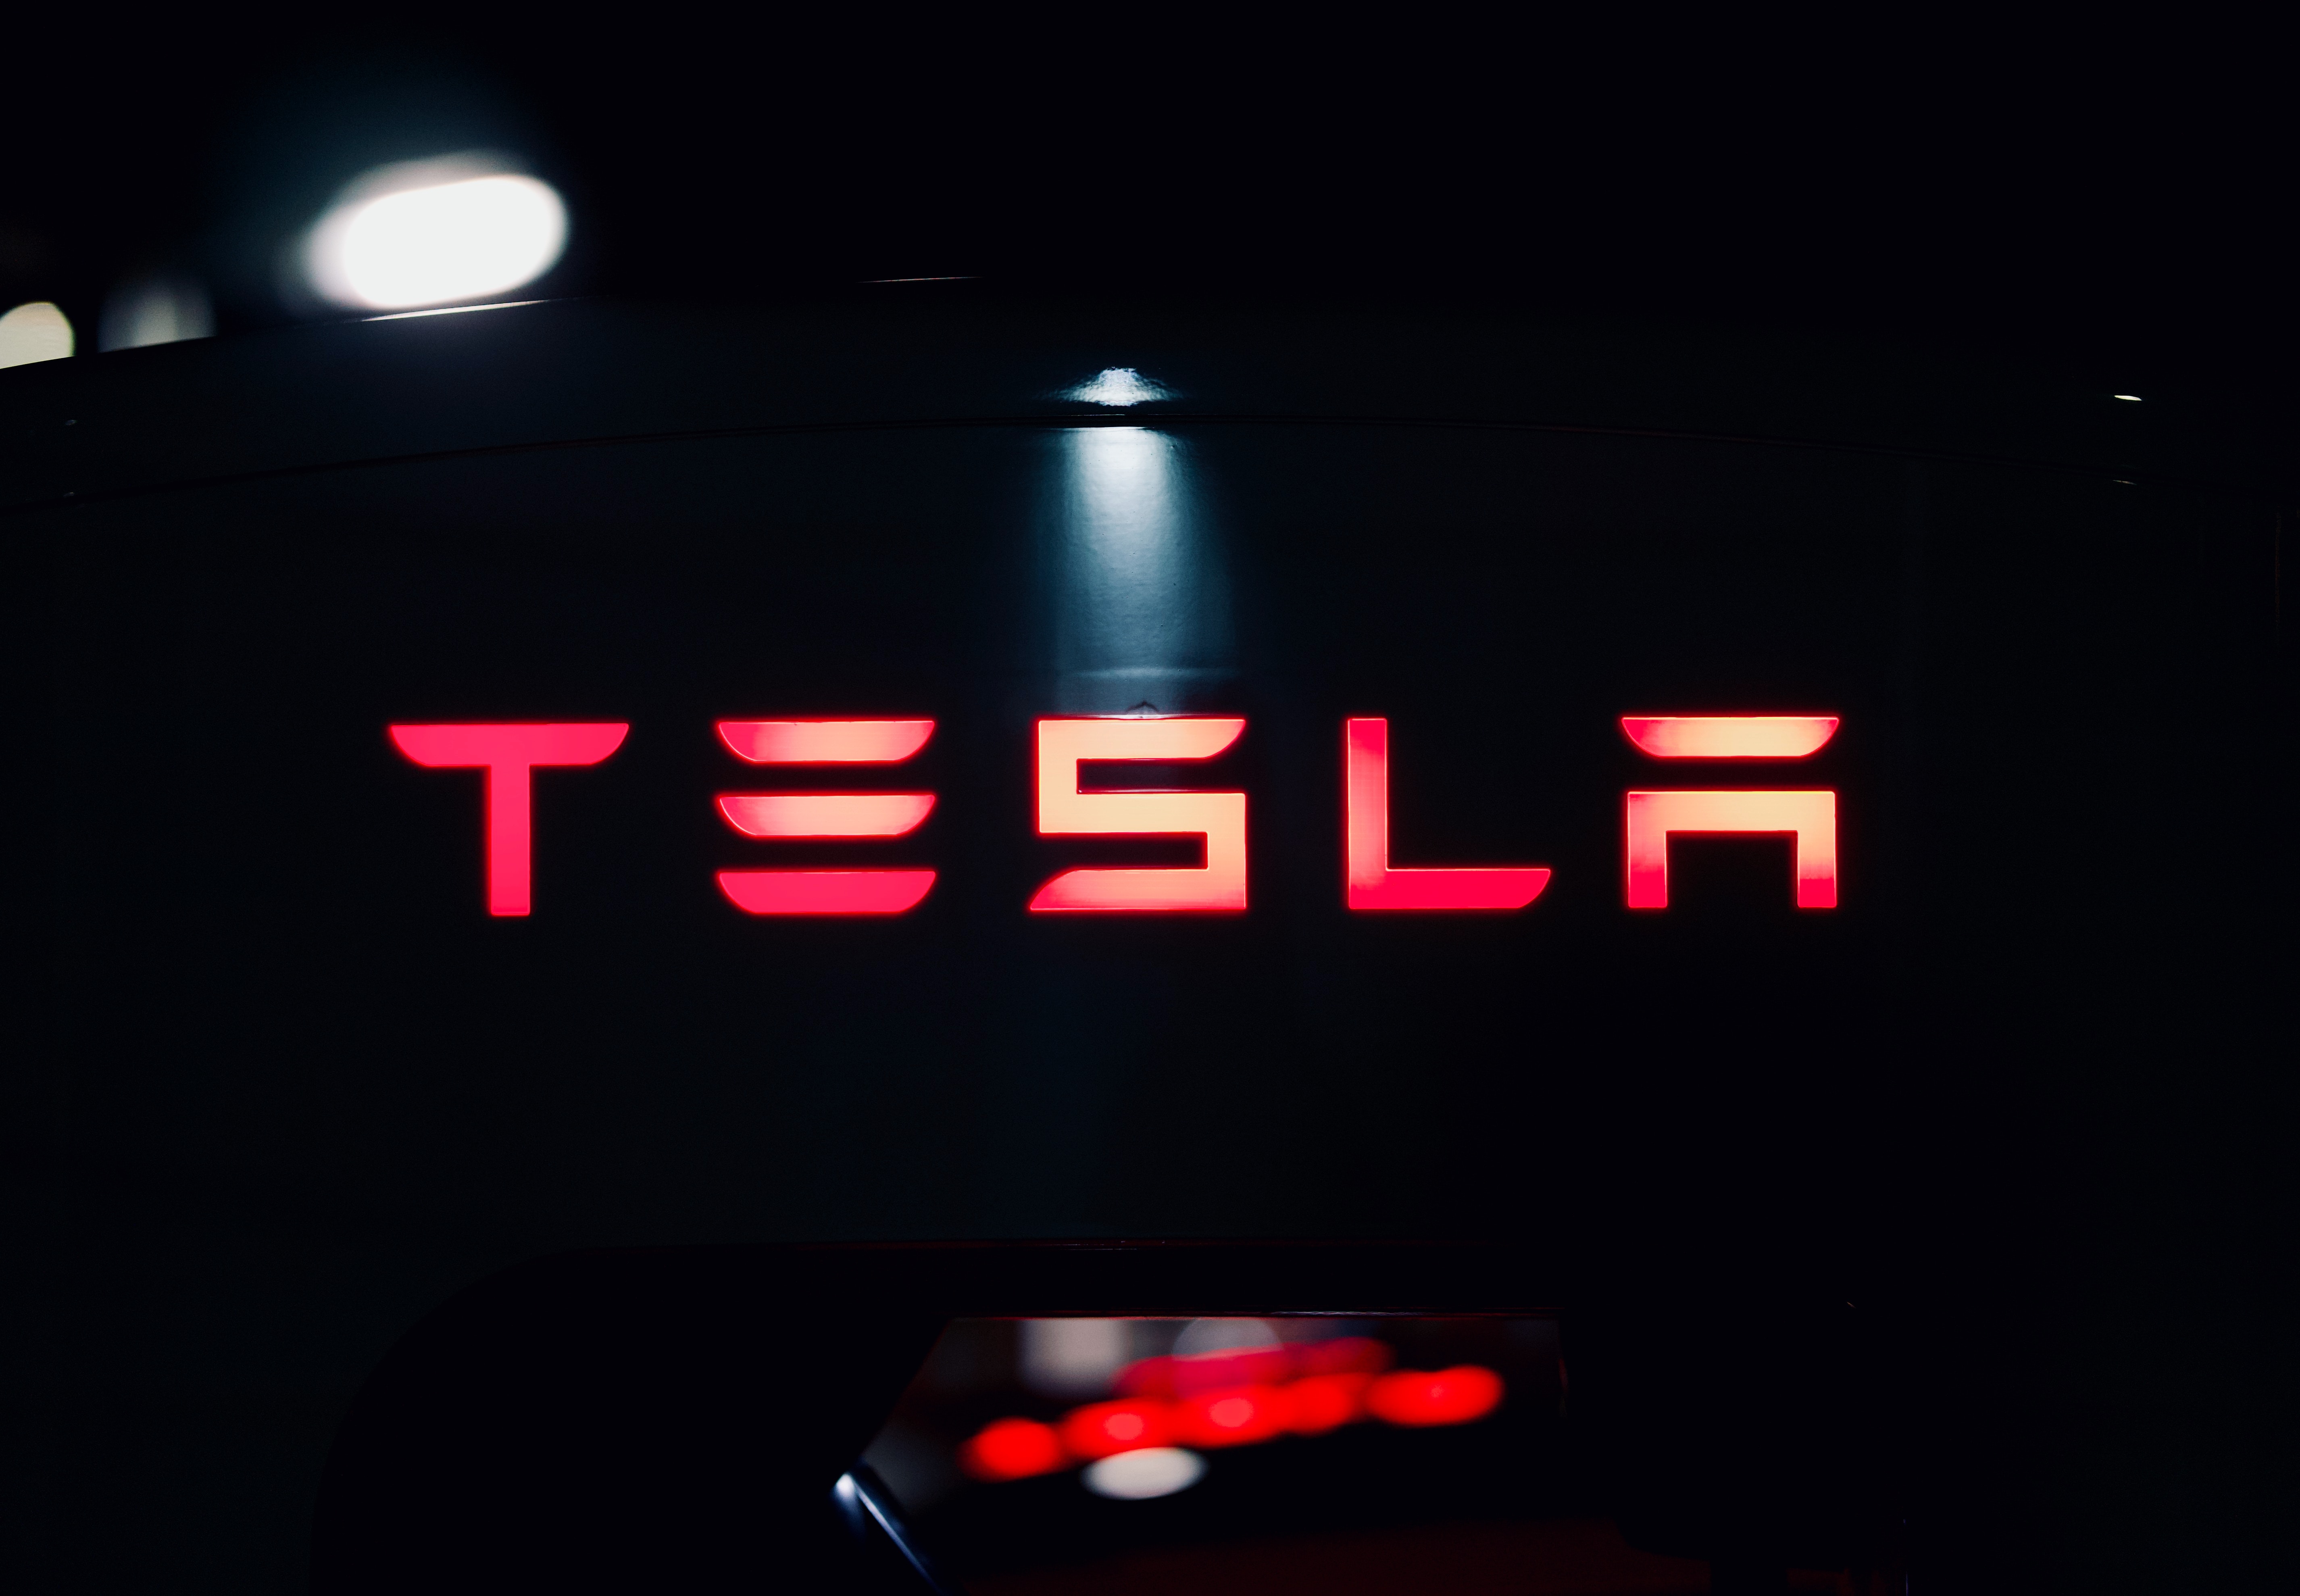 Das US-Justizministerium hat Tesla aufgefordert, Dokumente über die autonomen Fahrfunktionen Autopilot und FSD vorzulegen